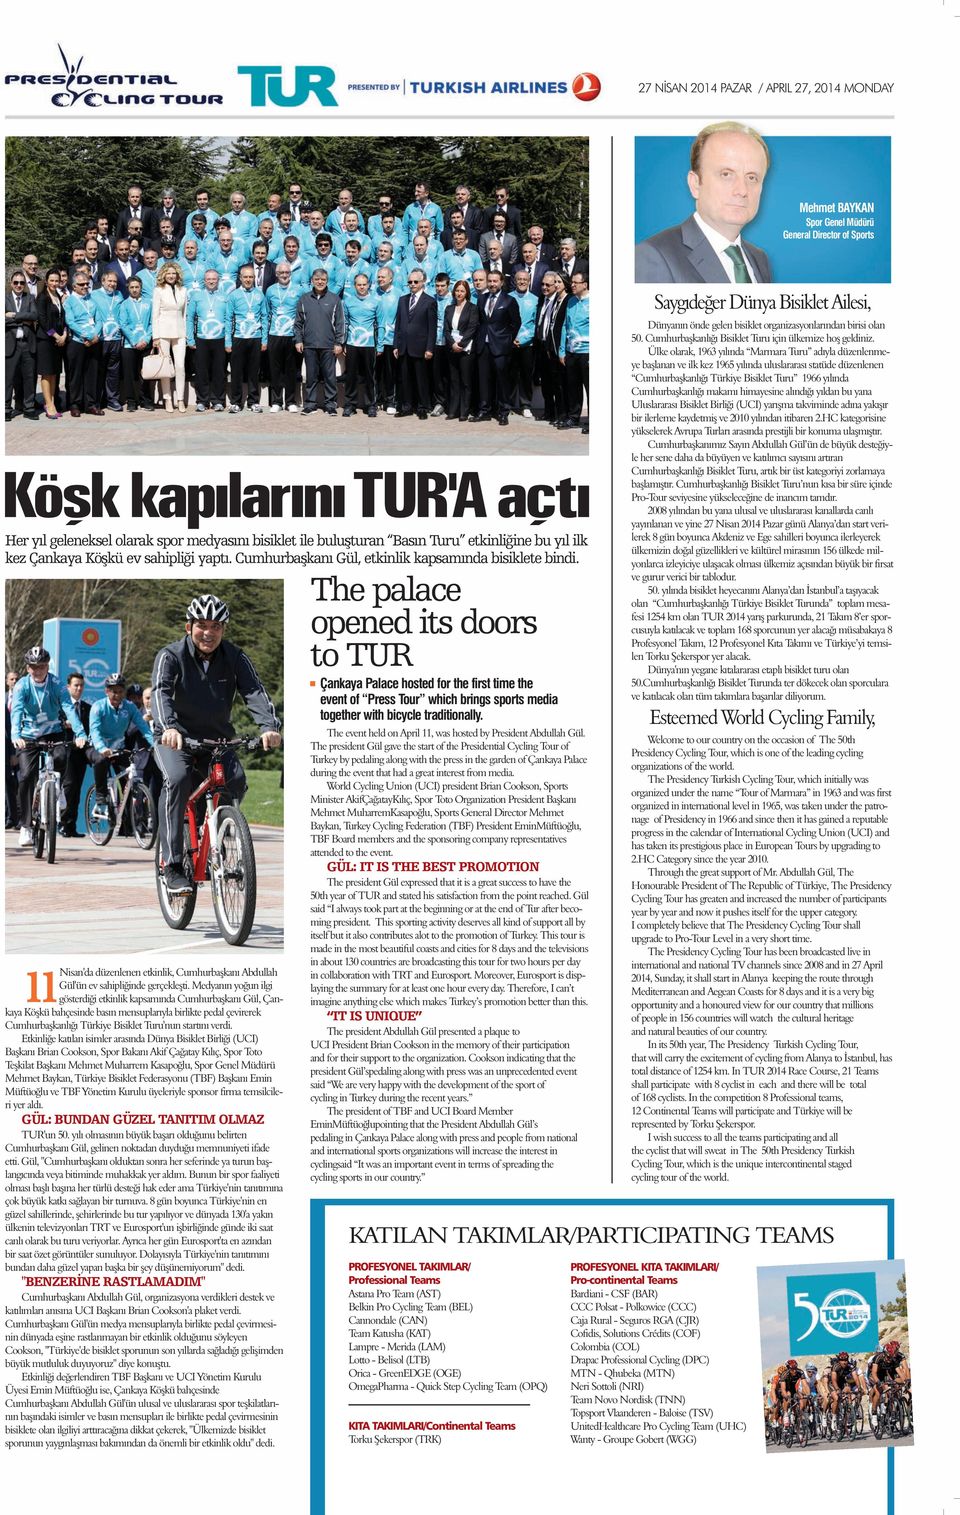 Medyanın yoğun ilgi 11Nisan'da gösterdiği etkinlik kapsamında Cumhurbaşkanı Gül, Çankaya Köşkü bahçesinde basın mensuplarıyla birlikte pedal çevirerek Cumhurbaşkanlığı Türkiye Bisiklet Turu'nun